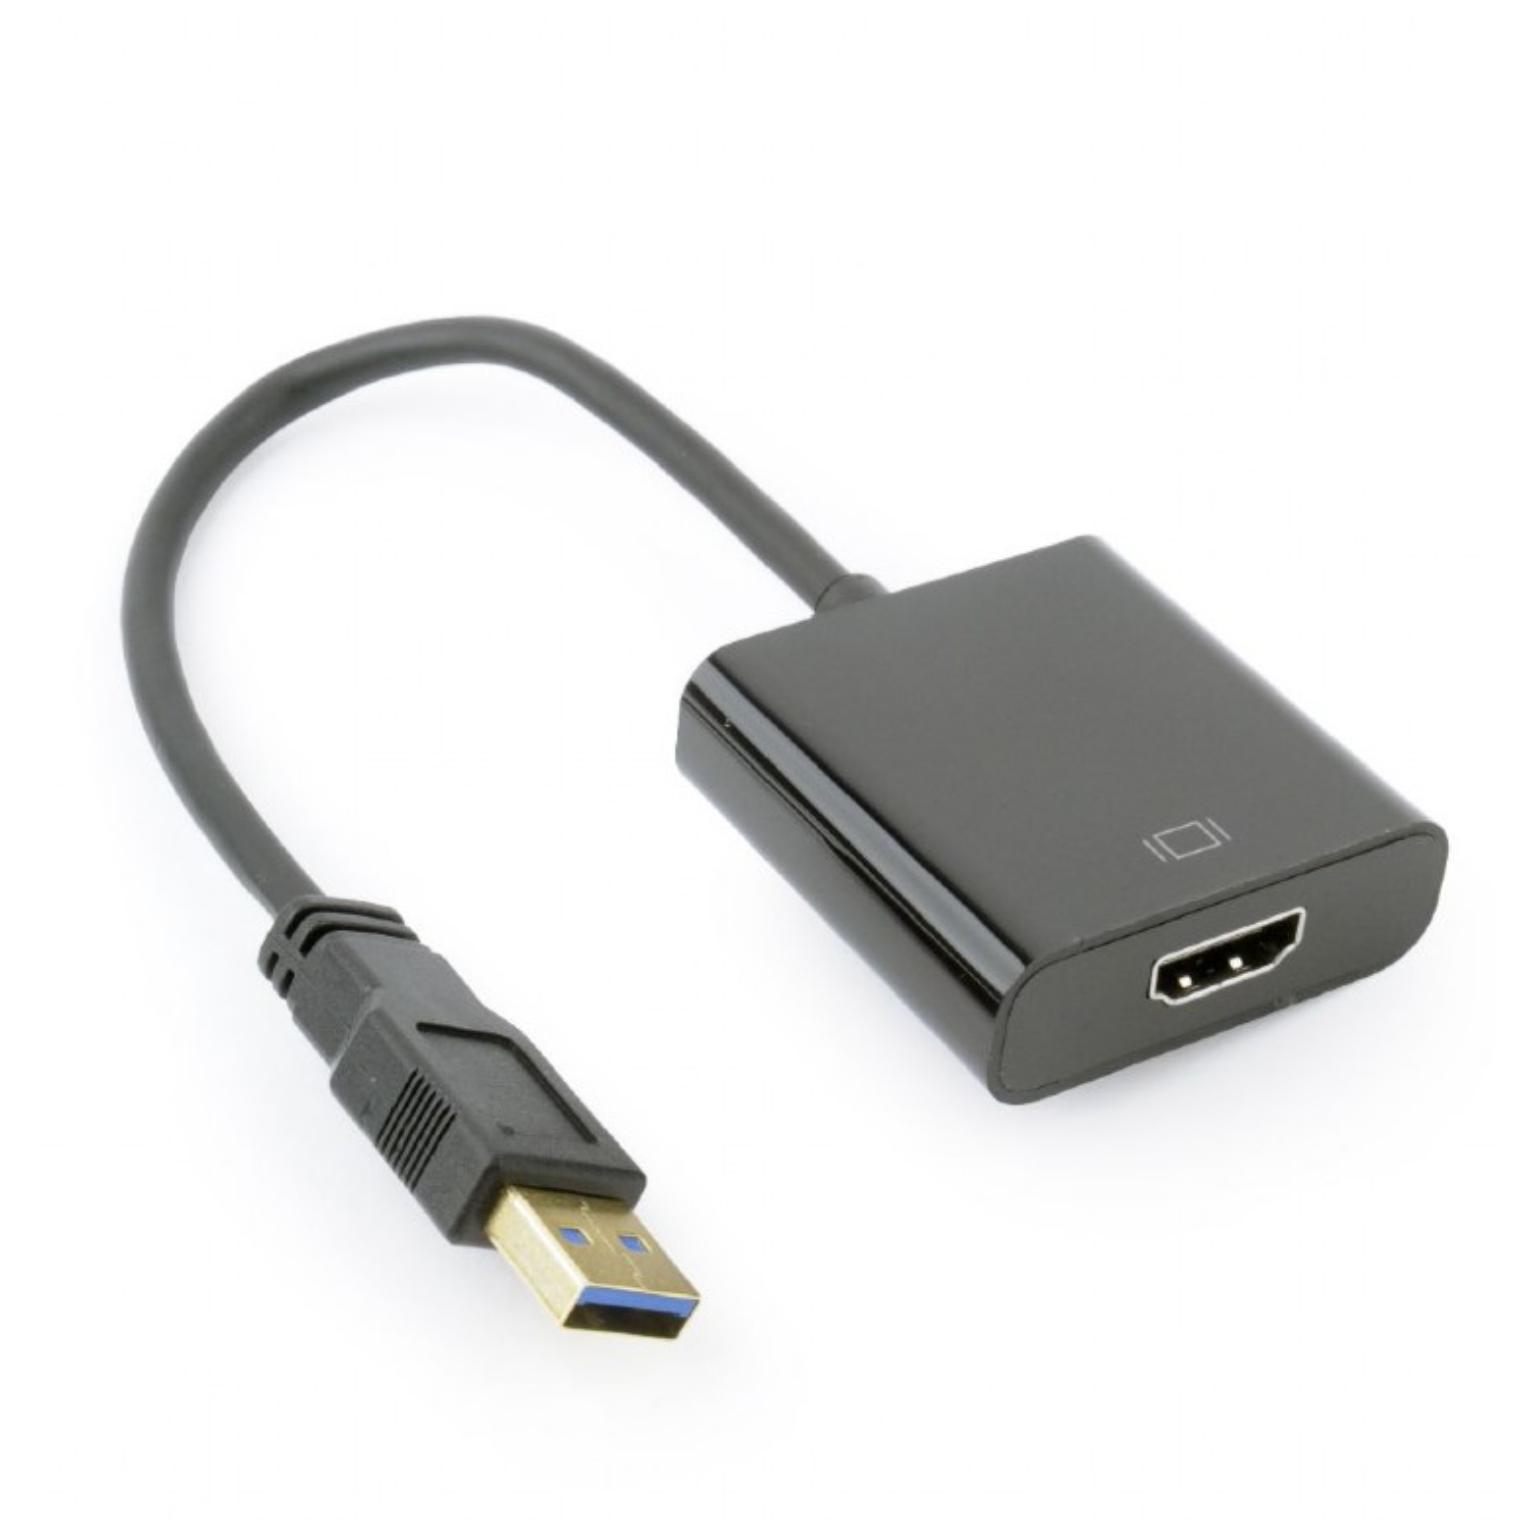 meesterwerk Doorzichtig weer USB 3.0 naar HDMI adapter - USB 3.0 naar HDMI adapter, Een extra monitor  aansluiten op uw systeem, Geschikt t/m: Windows 10, Max. resolutie: Full  HD@60Hz, Ingang: USB A 3.0 male (ook